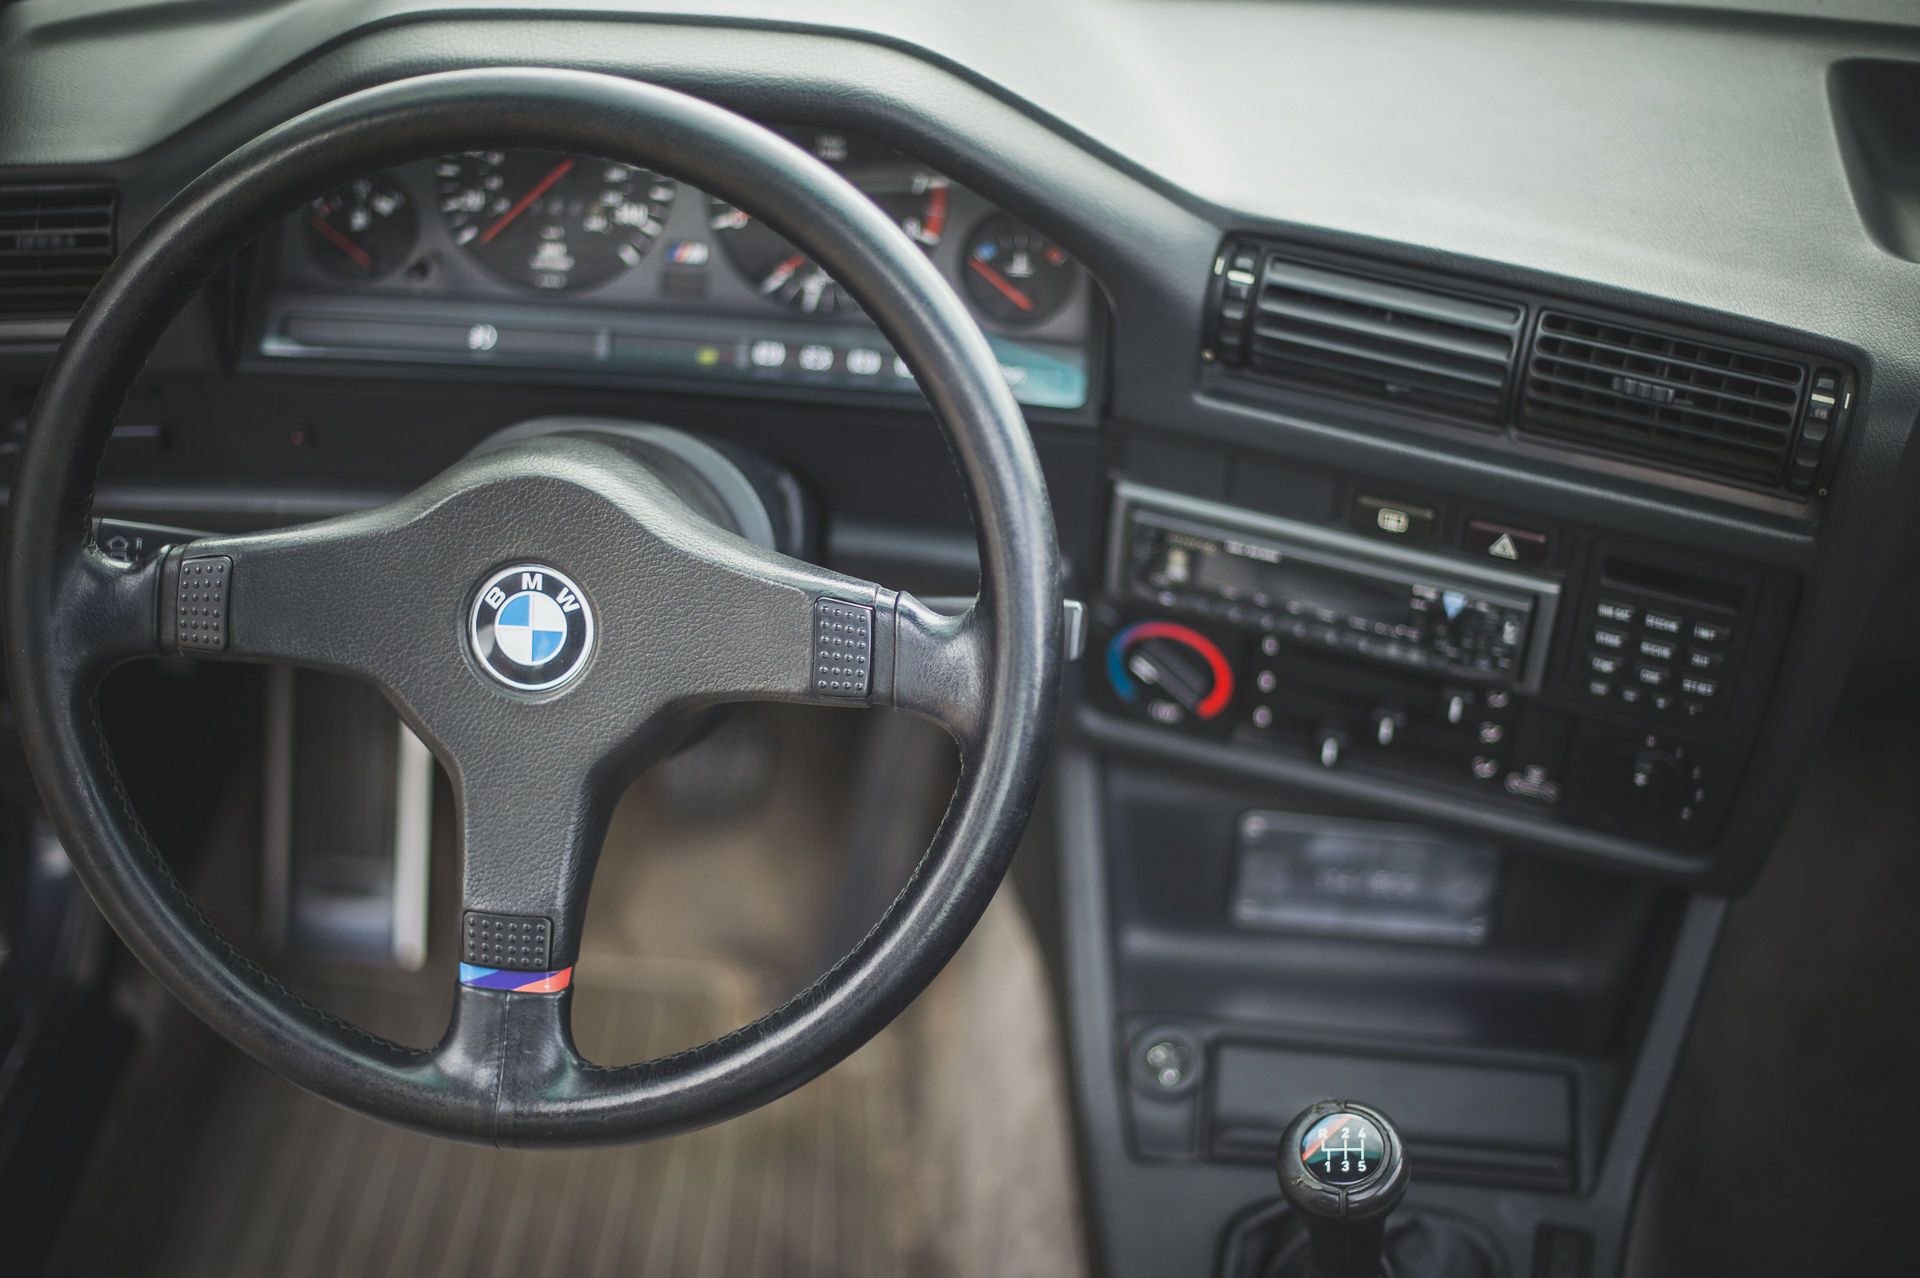 BMW M3 Evolution II, якій виповнилося 32 роки, готові продати за будь-яку суму.